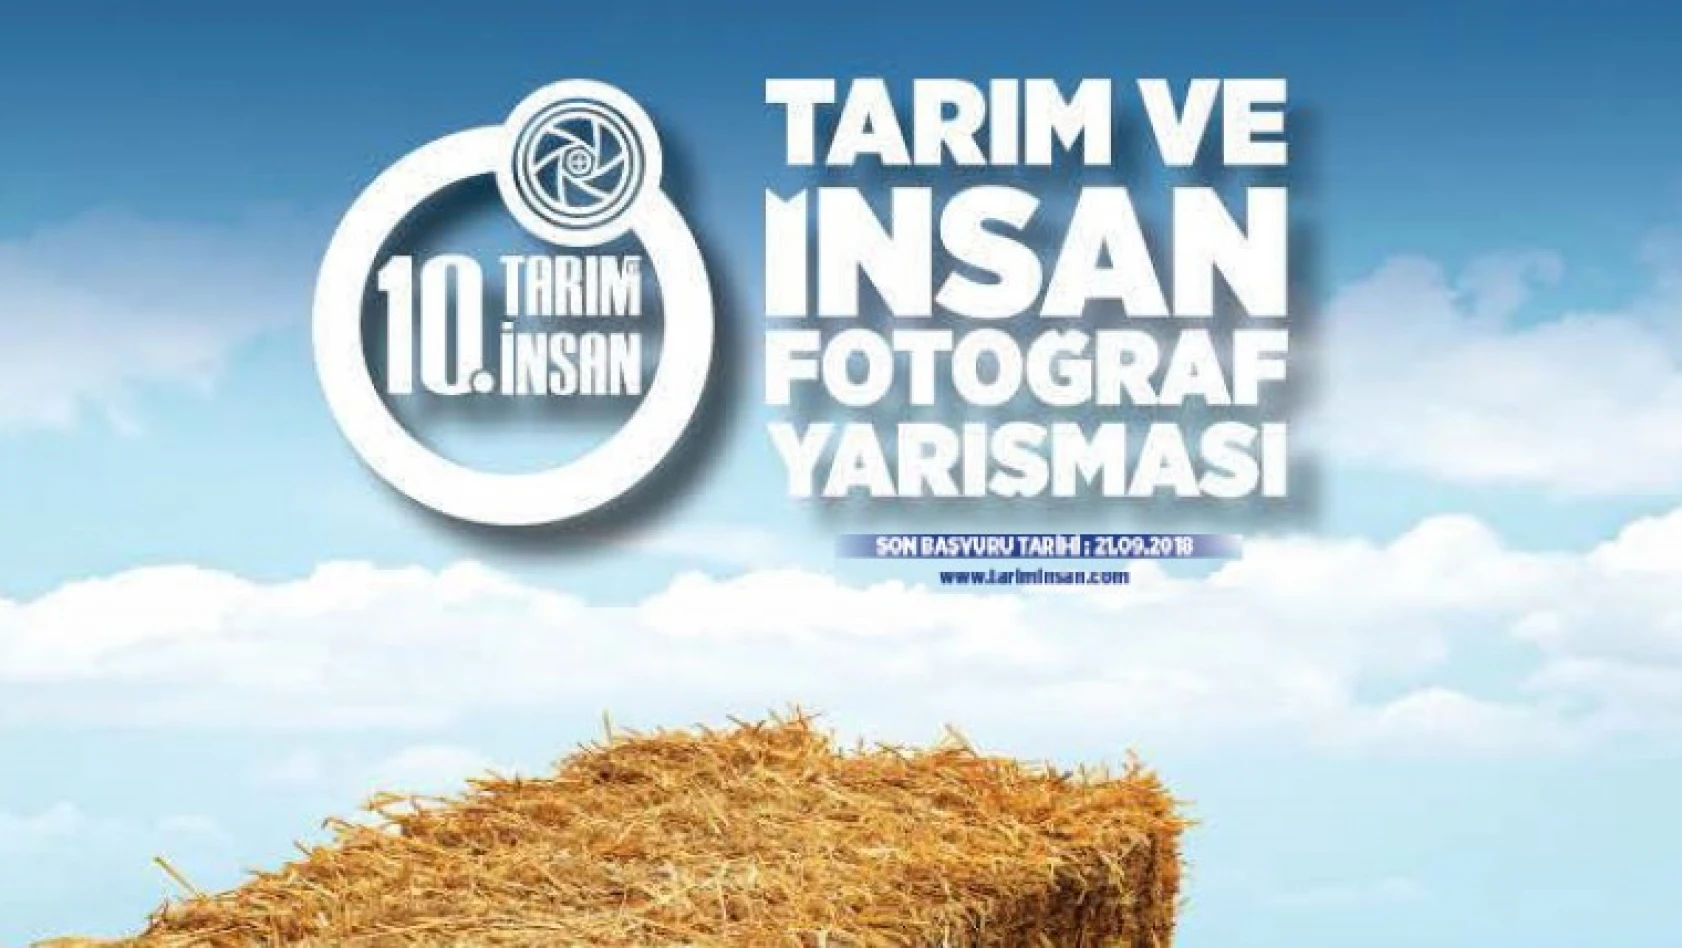 10. Tarım ve İnsan Fotoğraf Yarışması başvuruları start aldı